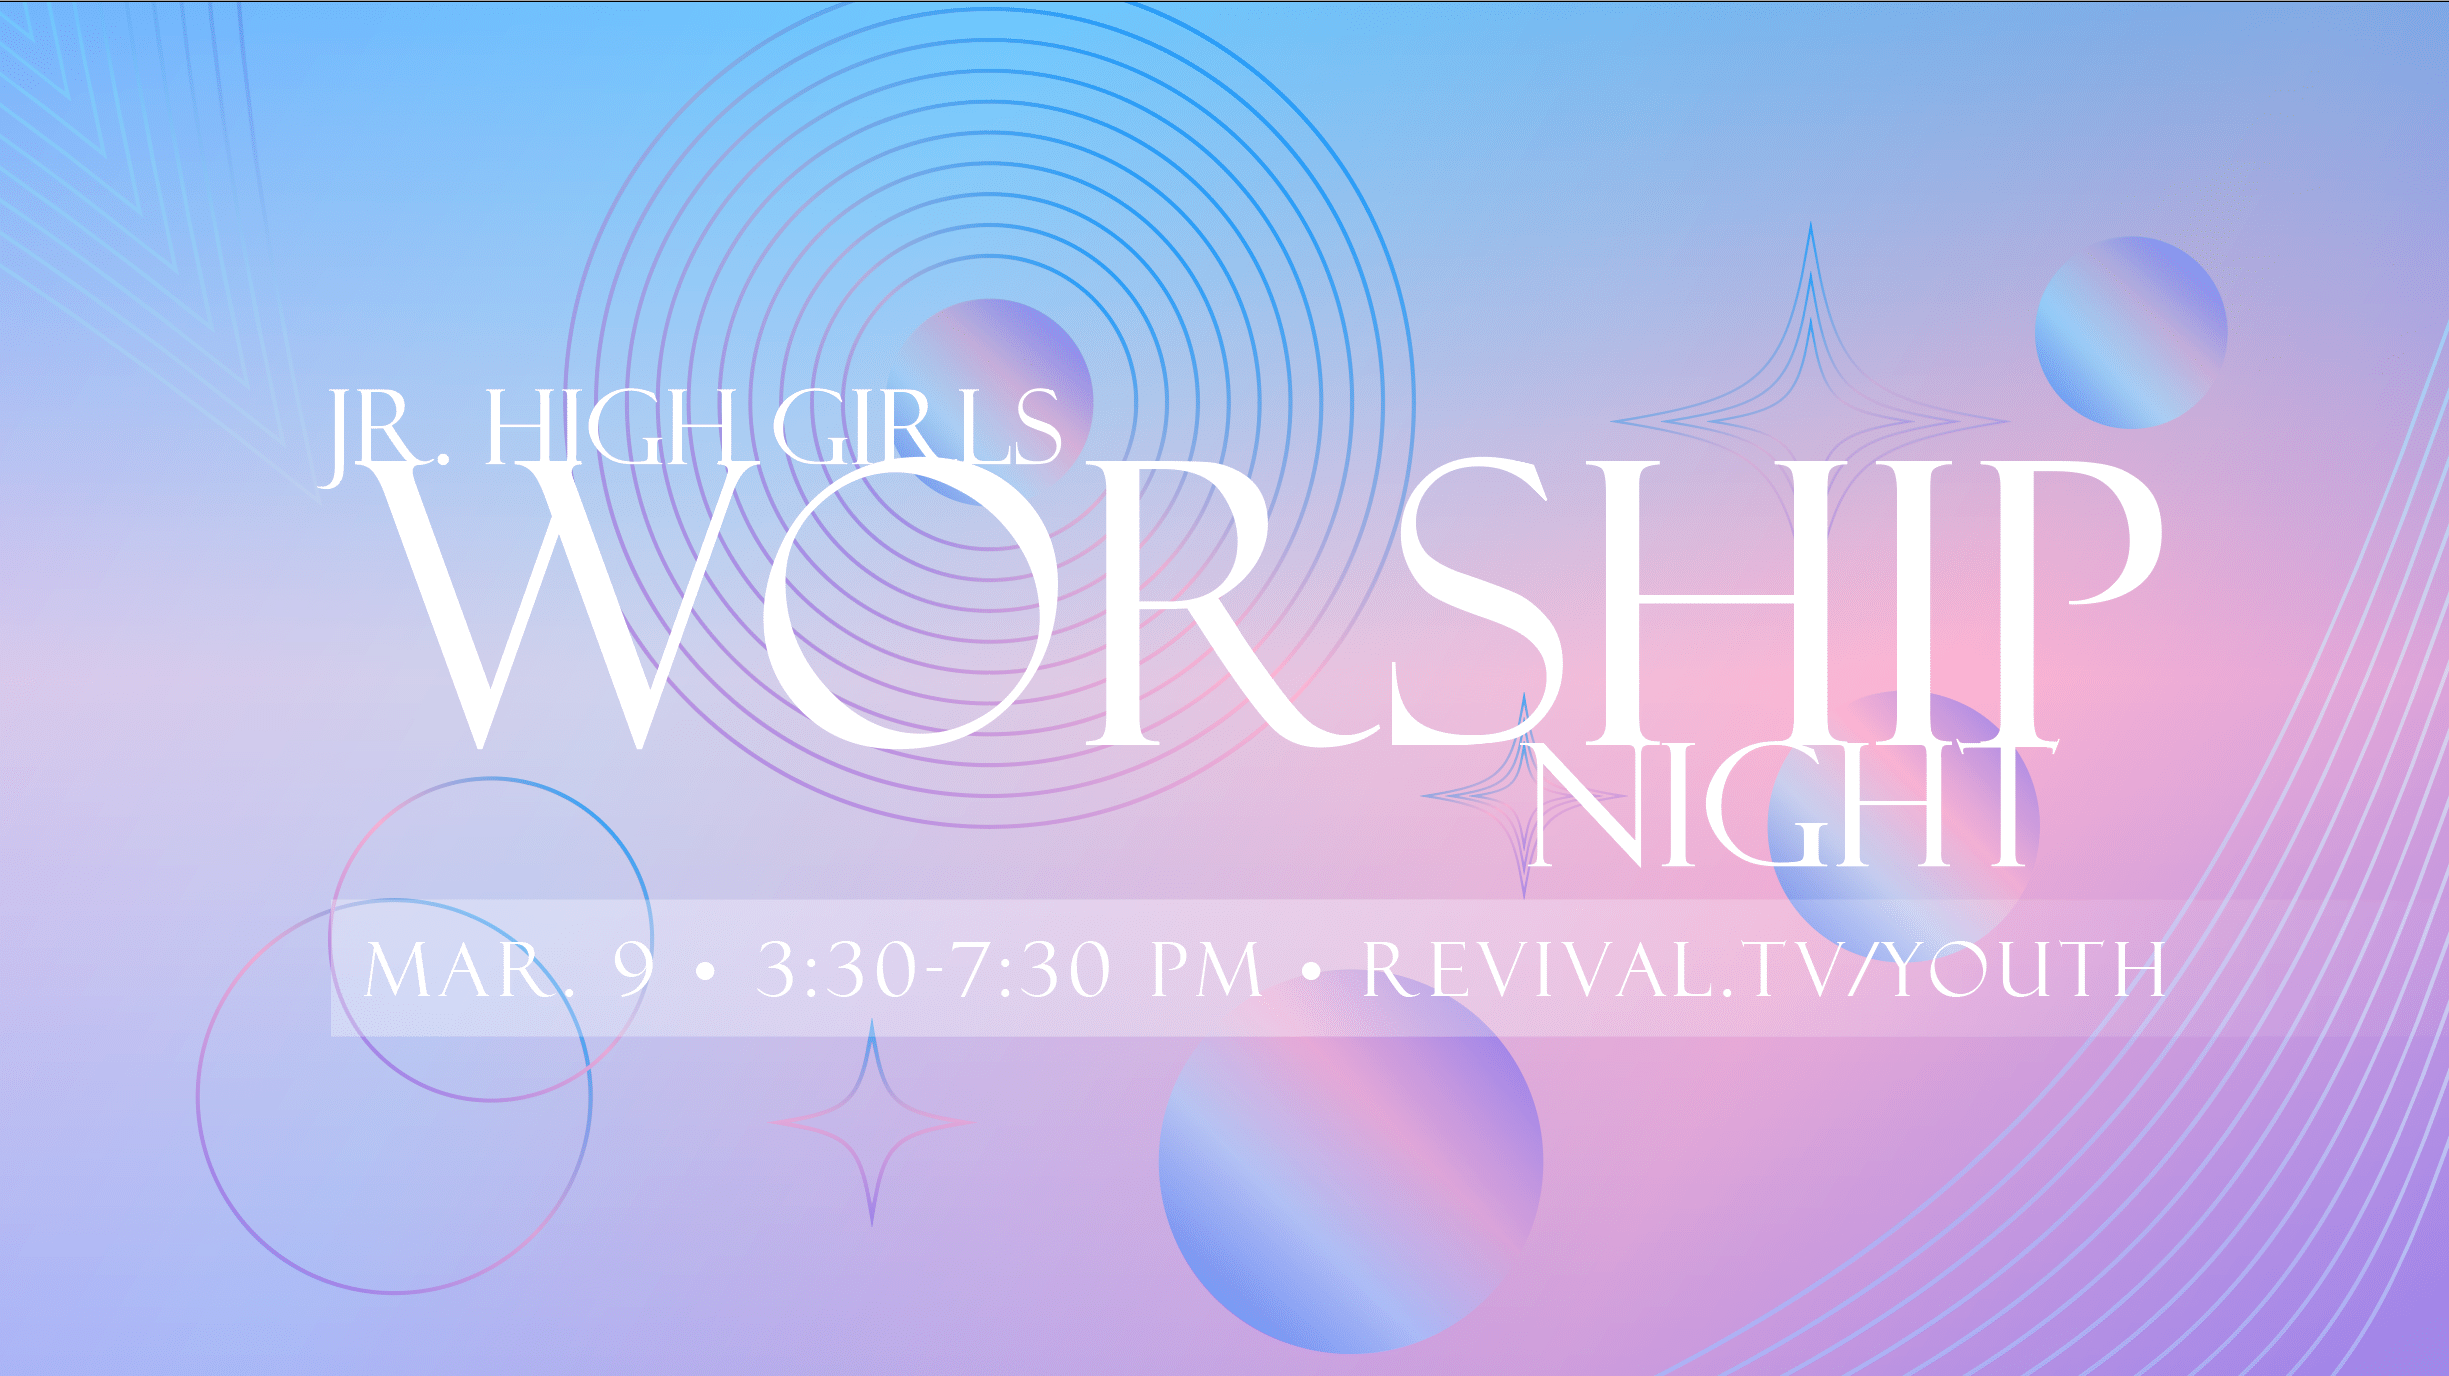 Jr. High Girls Worship Night